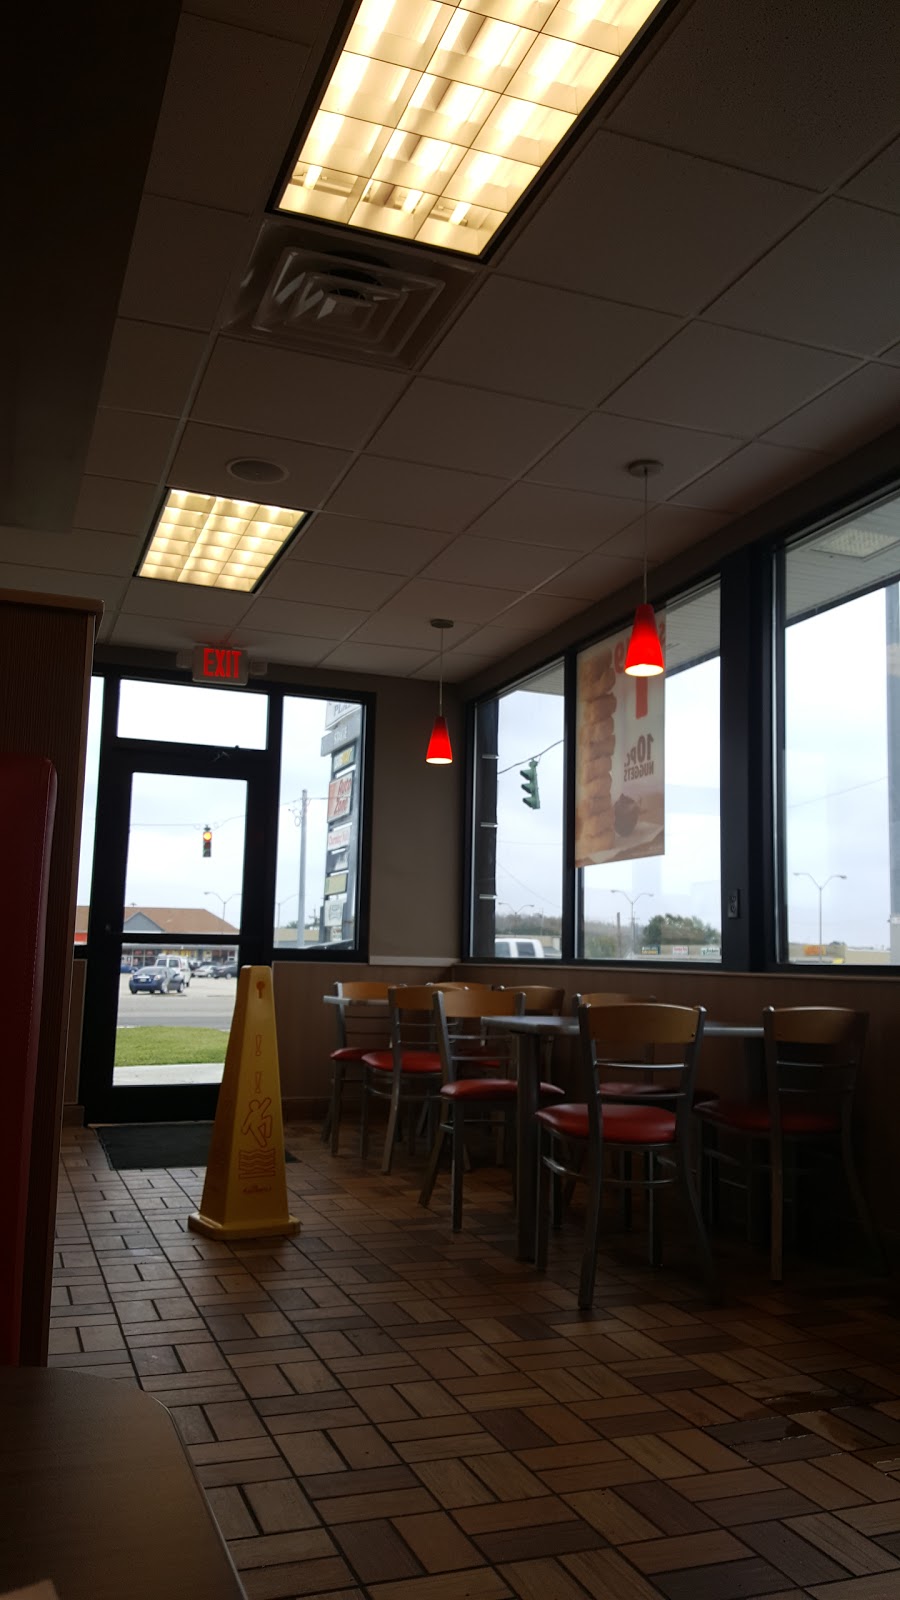 Burger King | restaurant | 6426 LA-182, Morgan City, LA 70380, USA | 9852721838 OR +1 985-272-1838